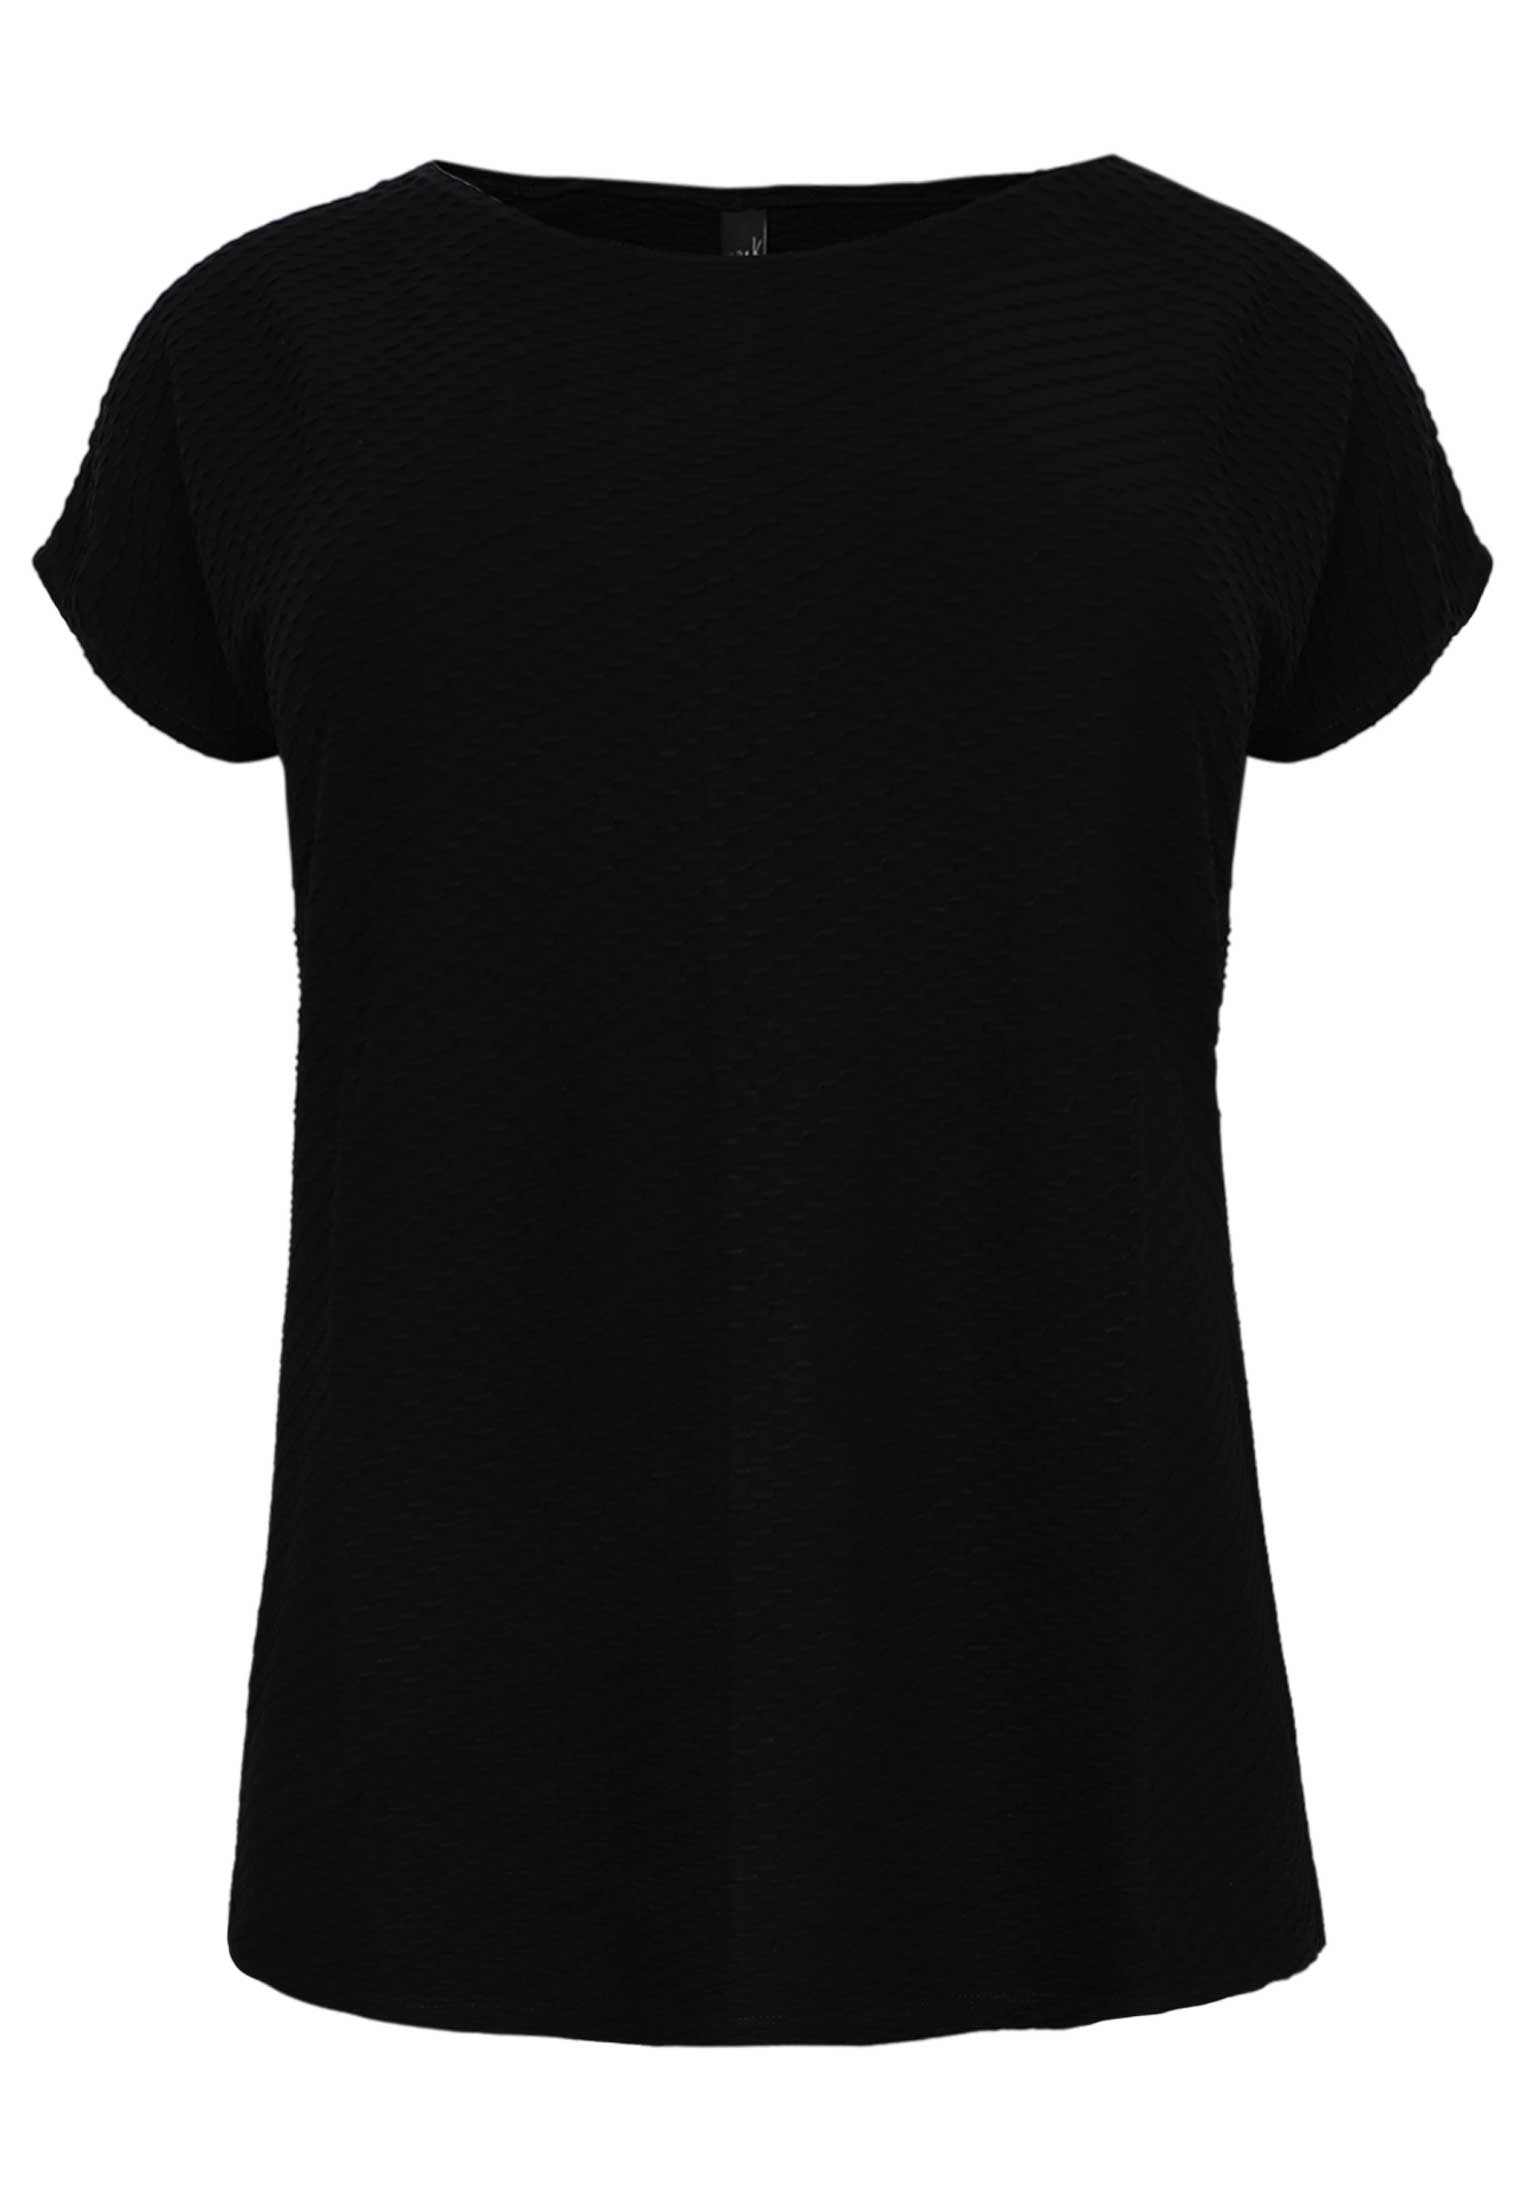 Shirt OBLIE 38/40 black